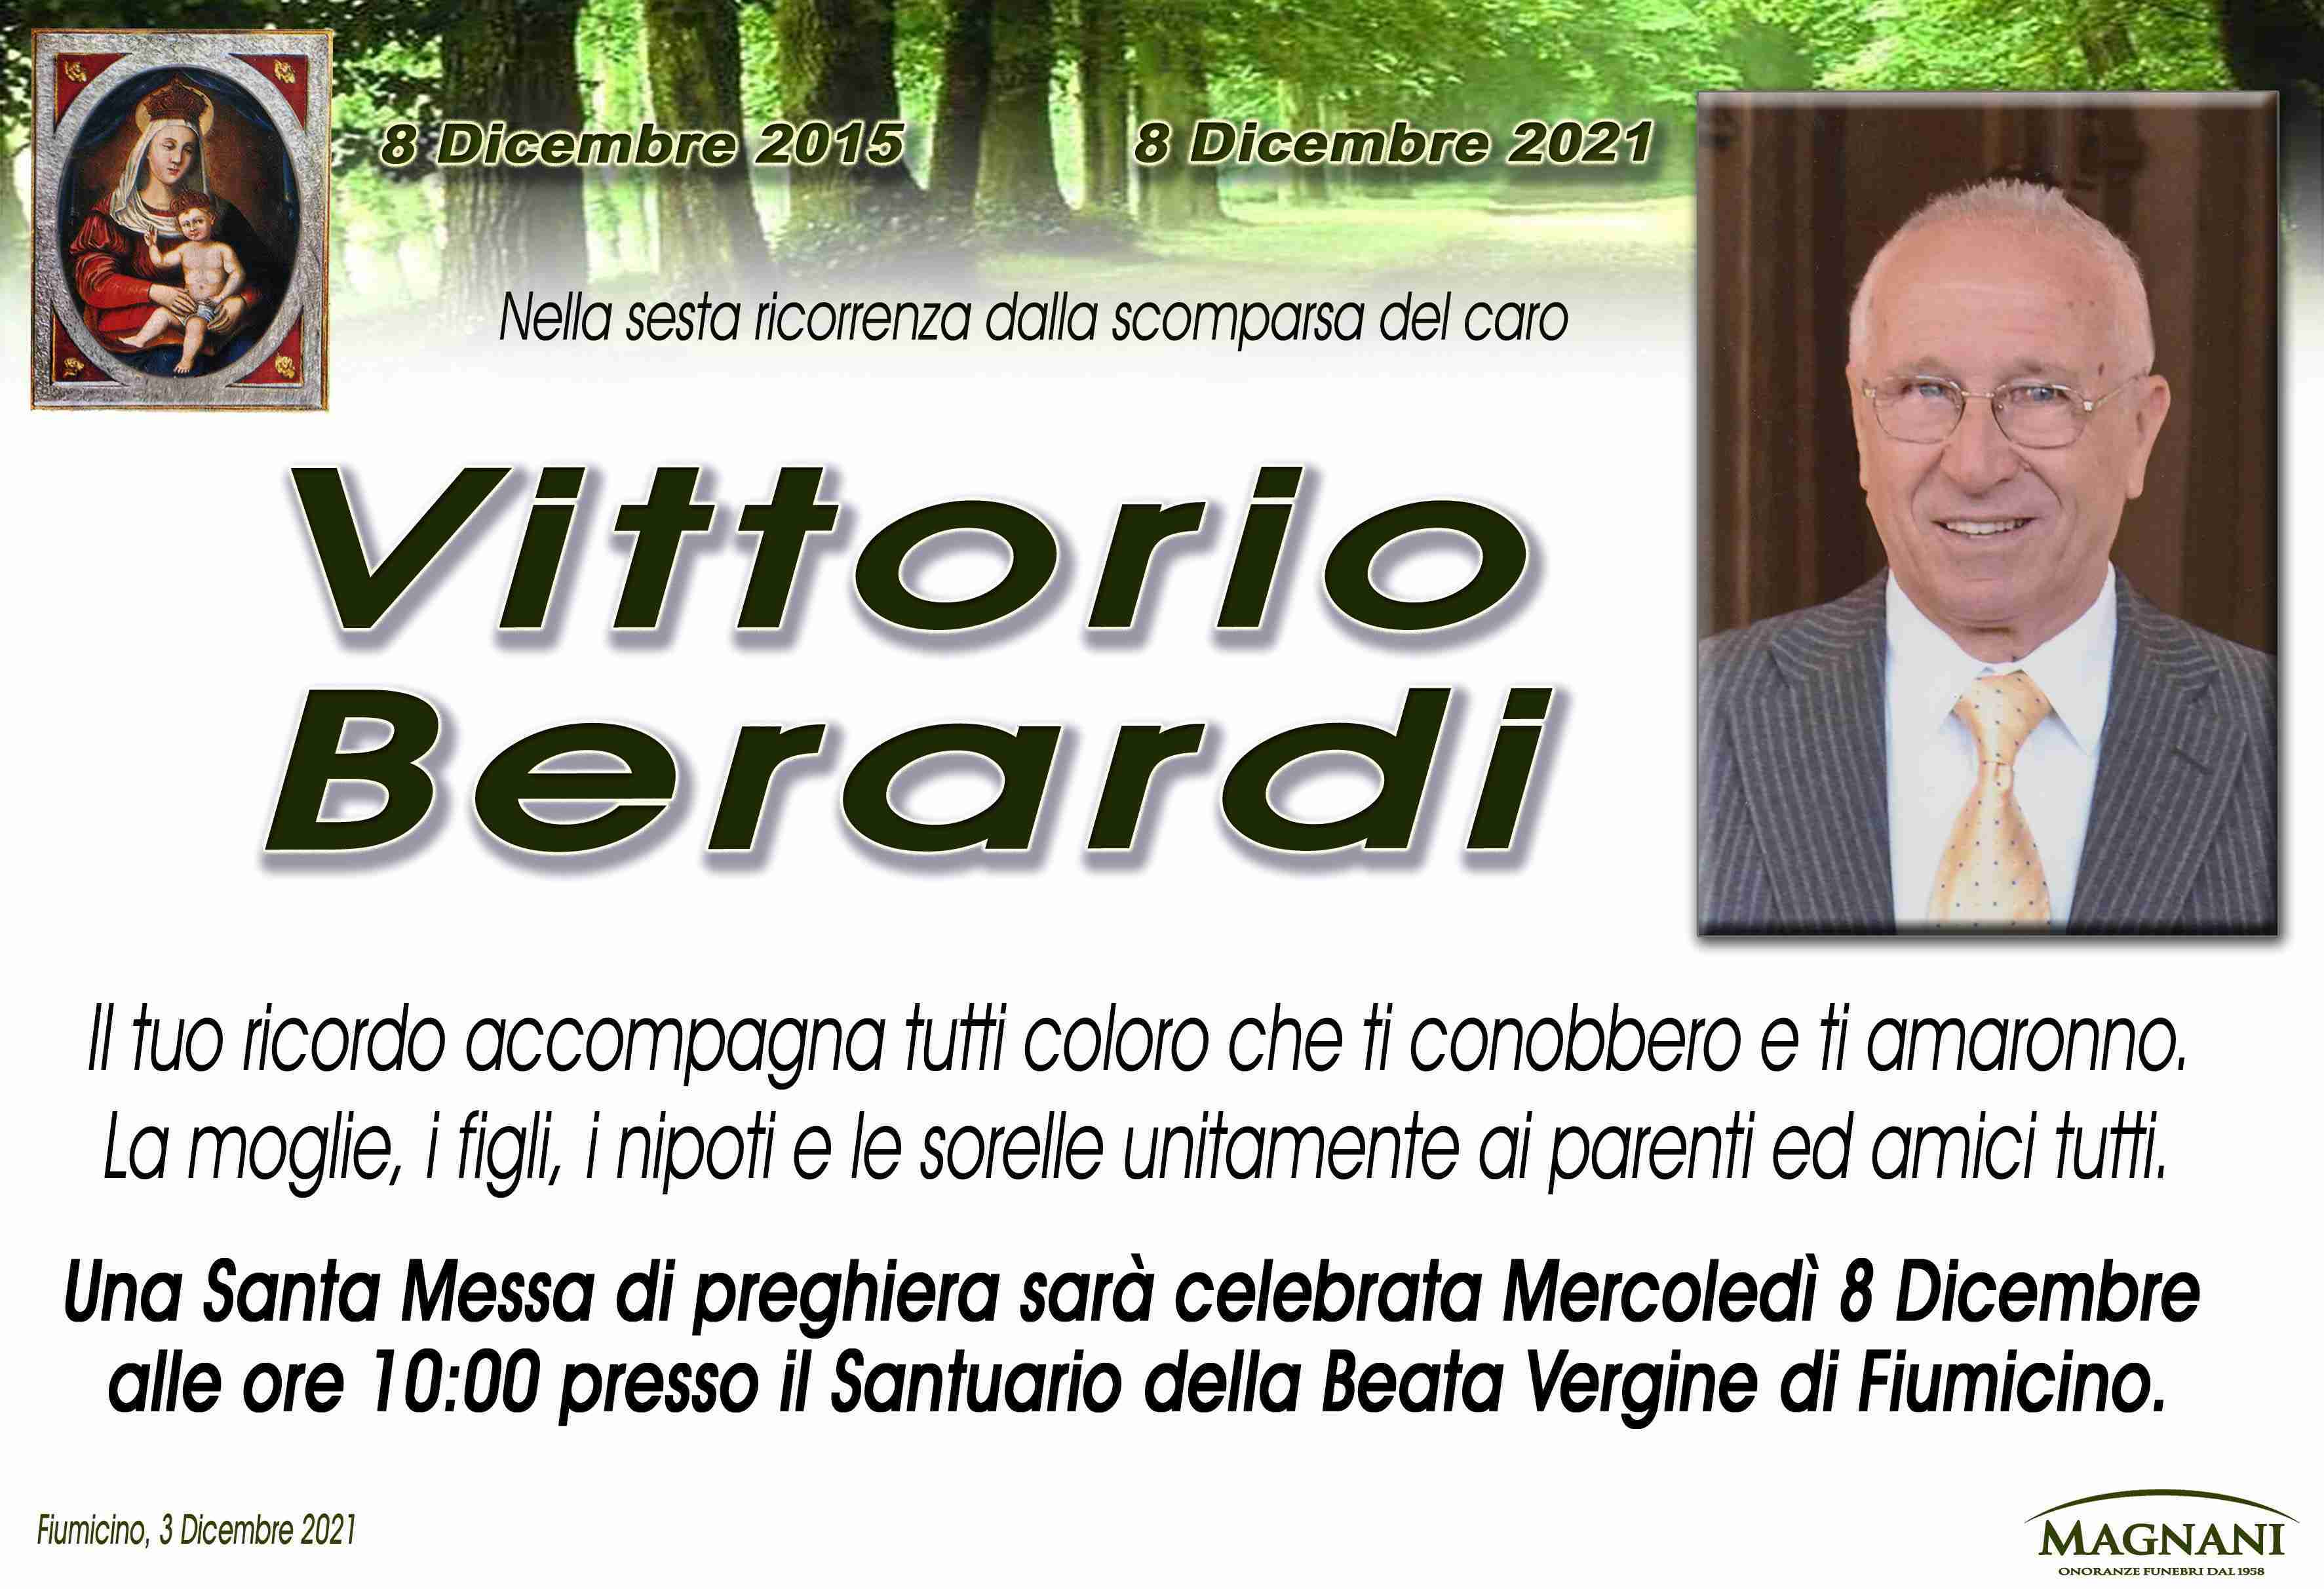 Vittorio Berardi